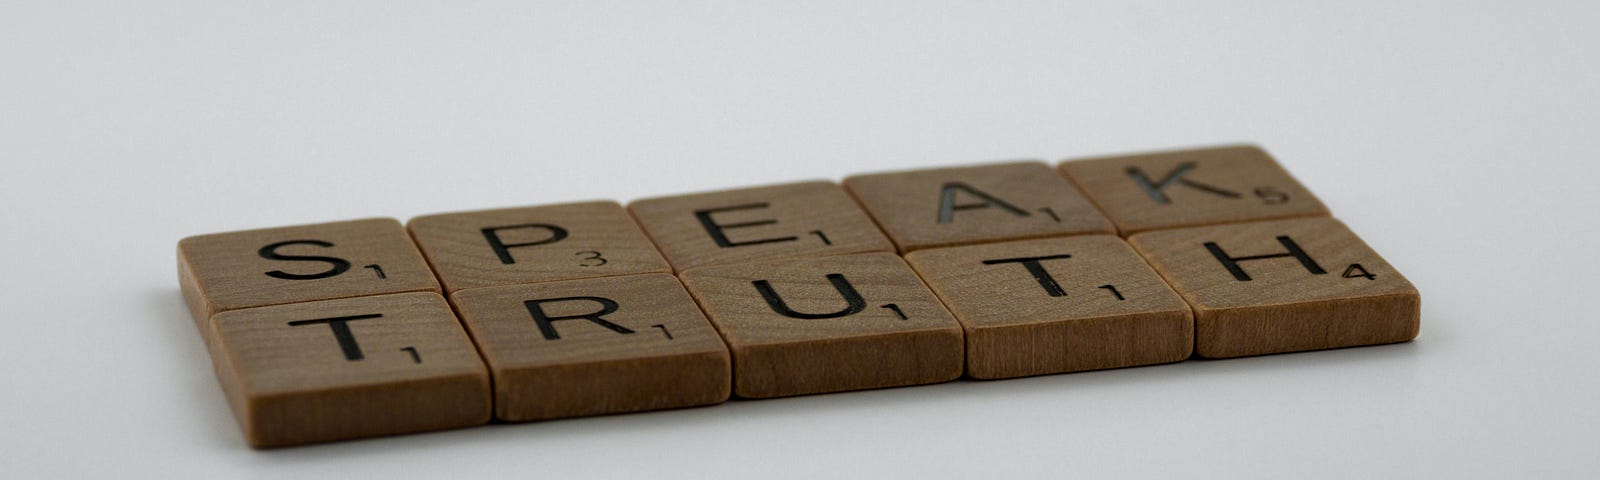 Scrabble tiles that spell “Speak Truth.”